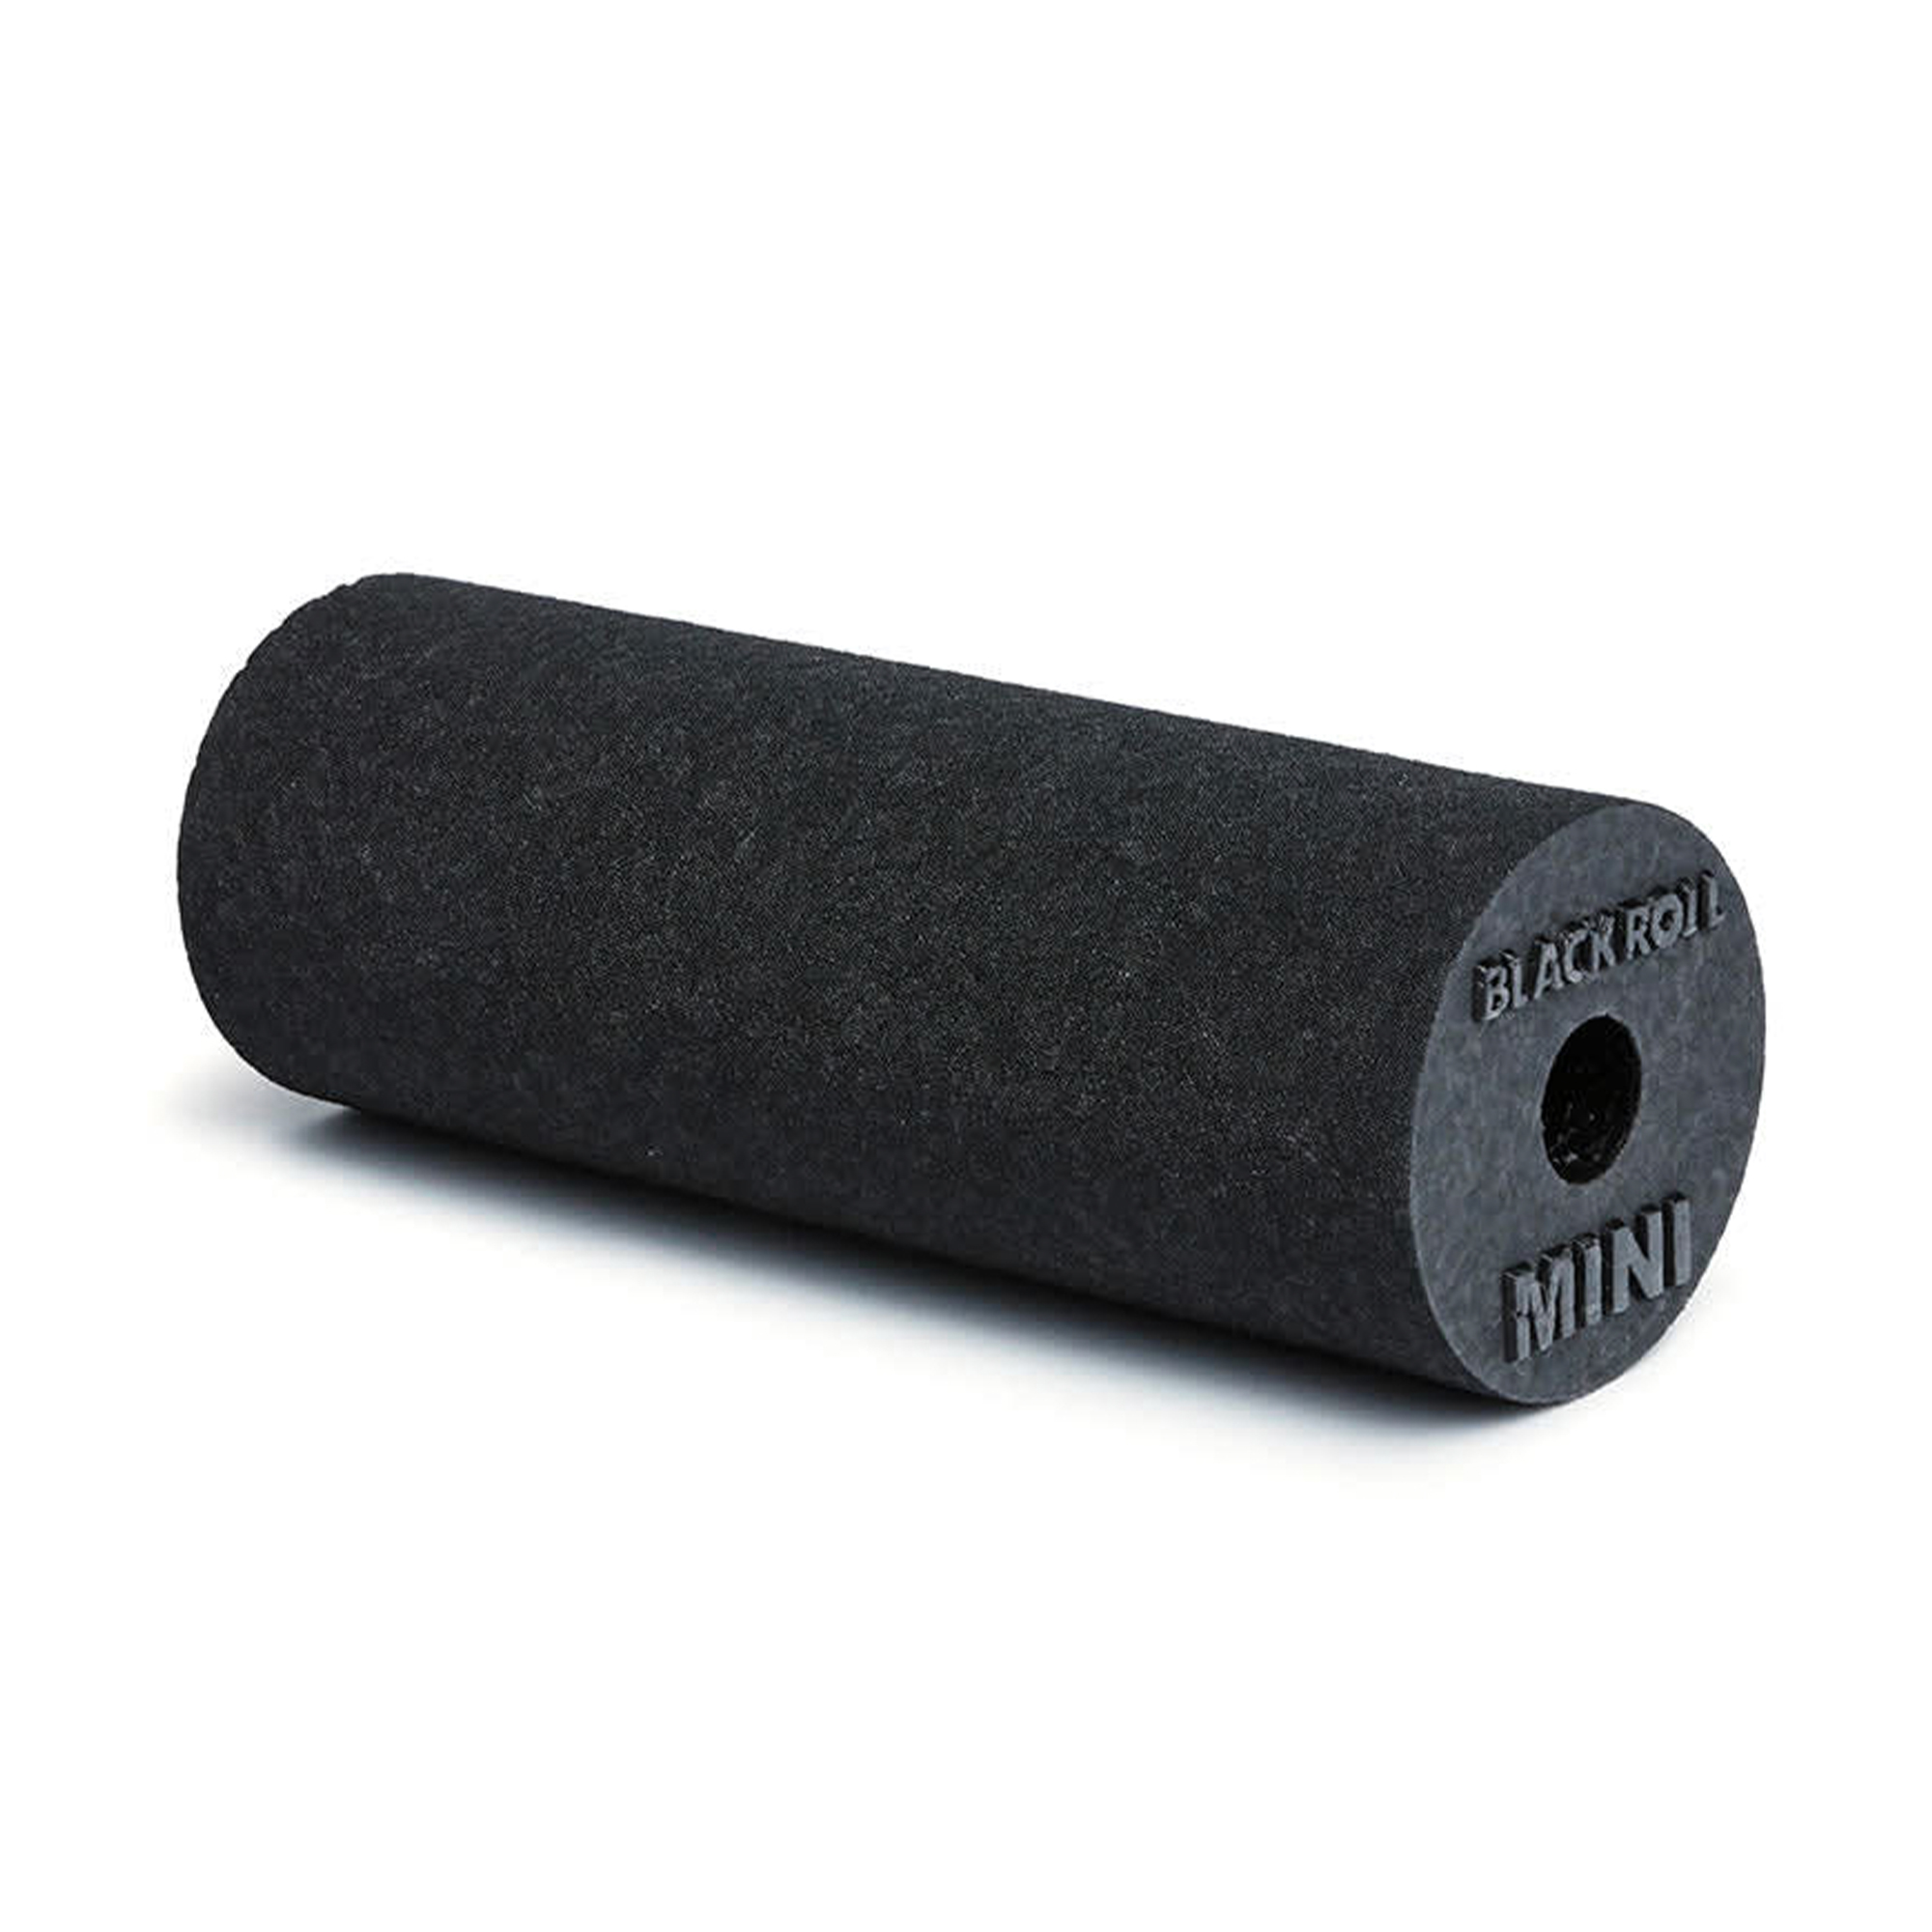 Blackroll Mini Foam Roller Sort - 15 x 6 cm thumbnail